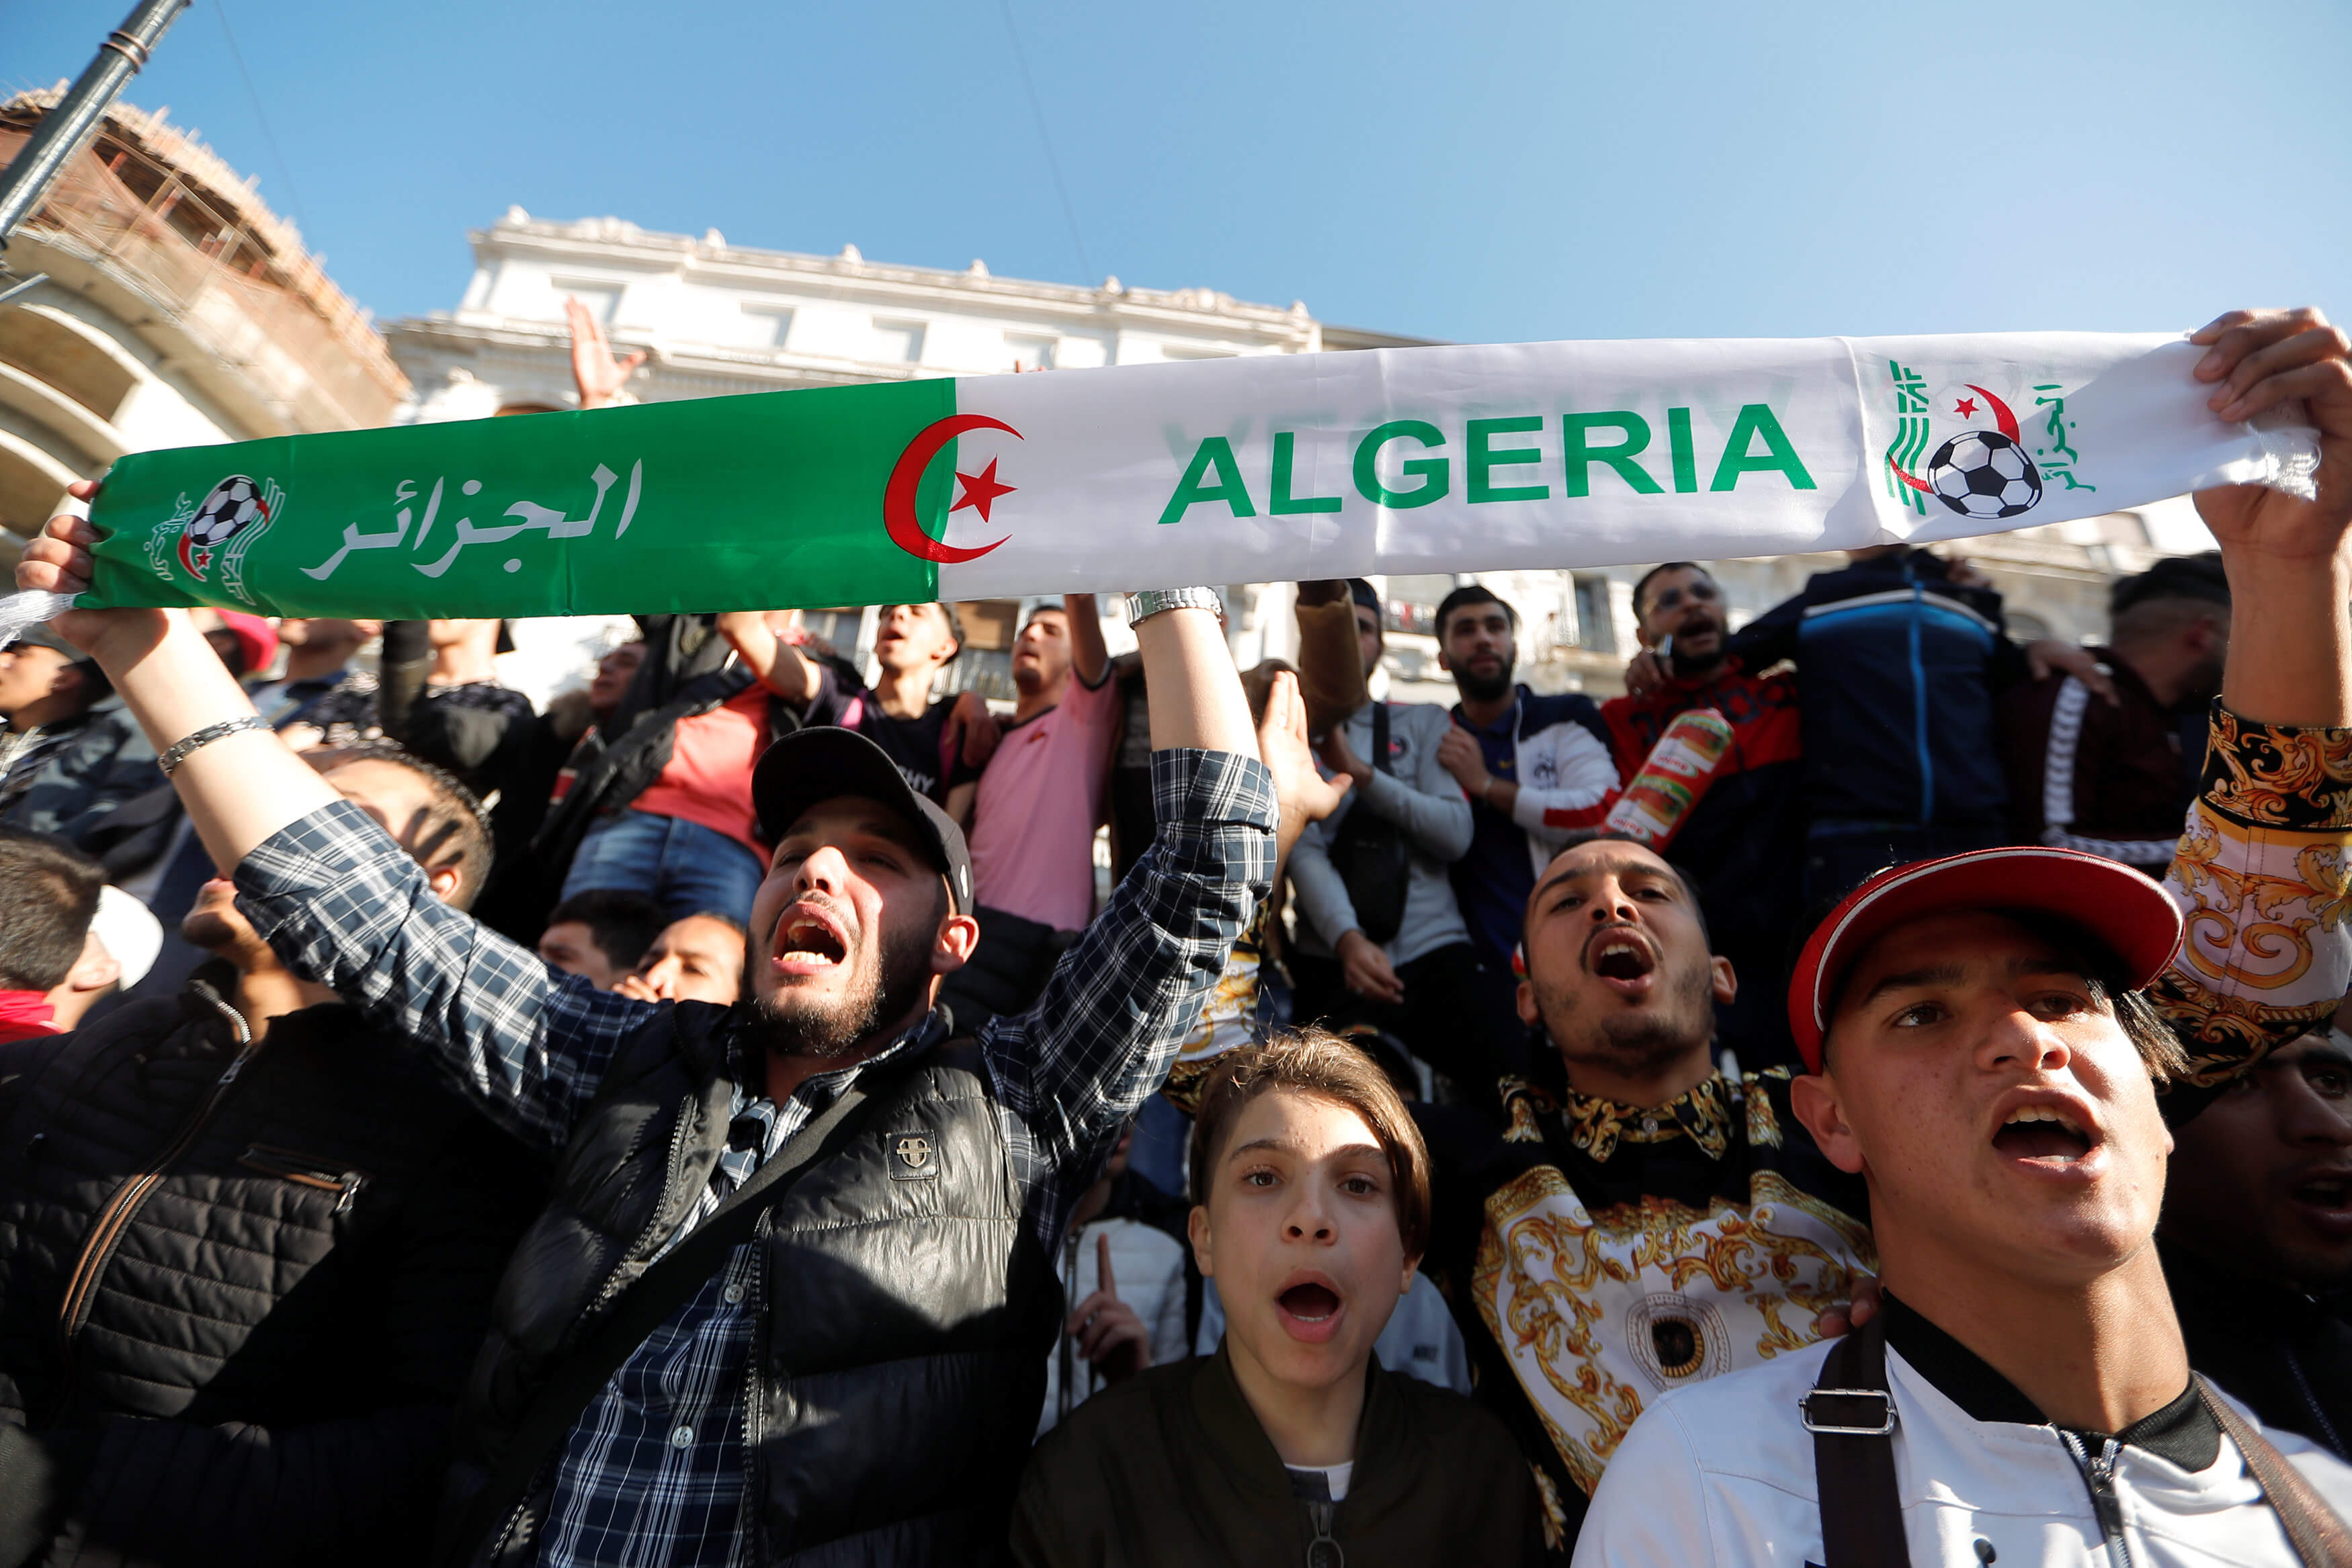 Διαδηλώσεις εντός και εκτός Αλγερίας για την νέα υποψηφιότητα του προέδρου Μπουτεφλίκα [pics]